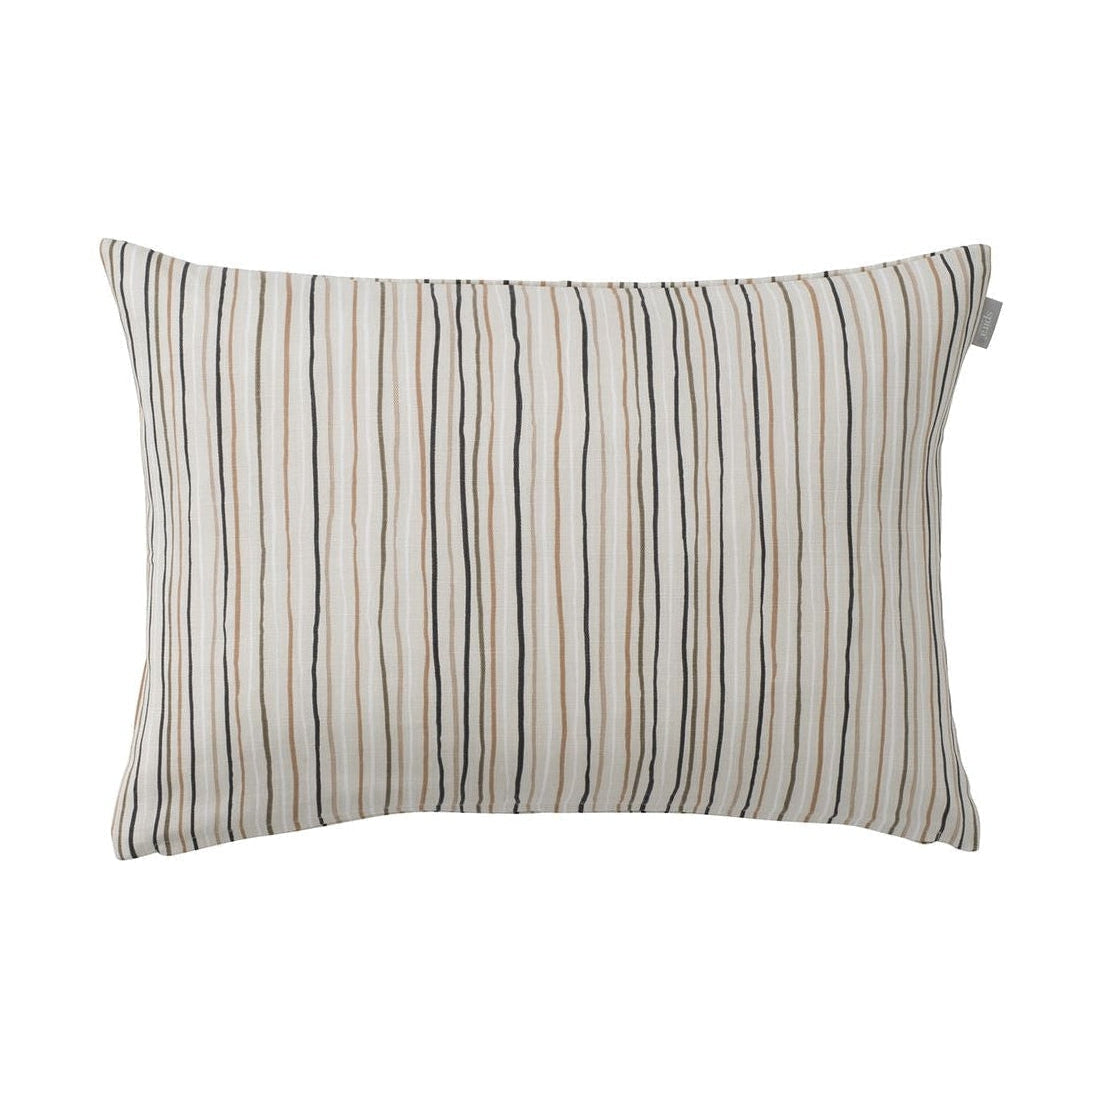 Spira Stripe R60 Cushion Cover, Multi Natural